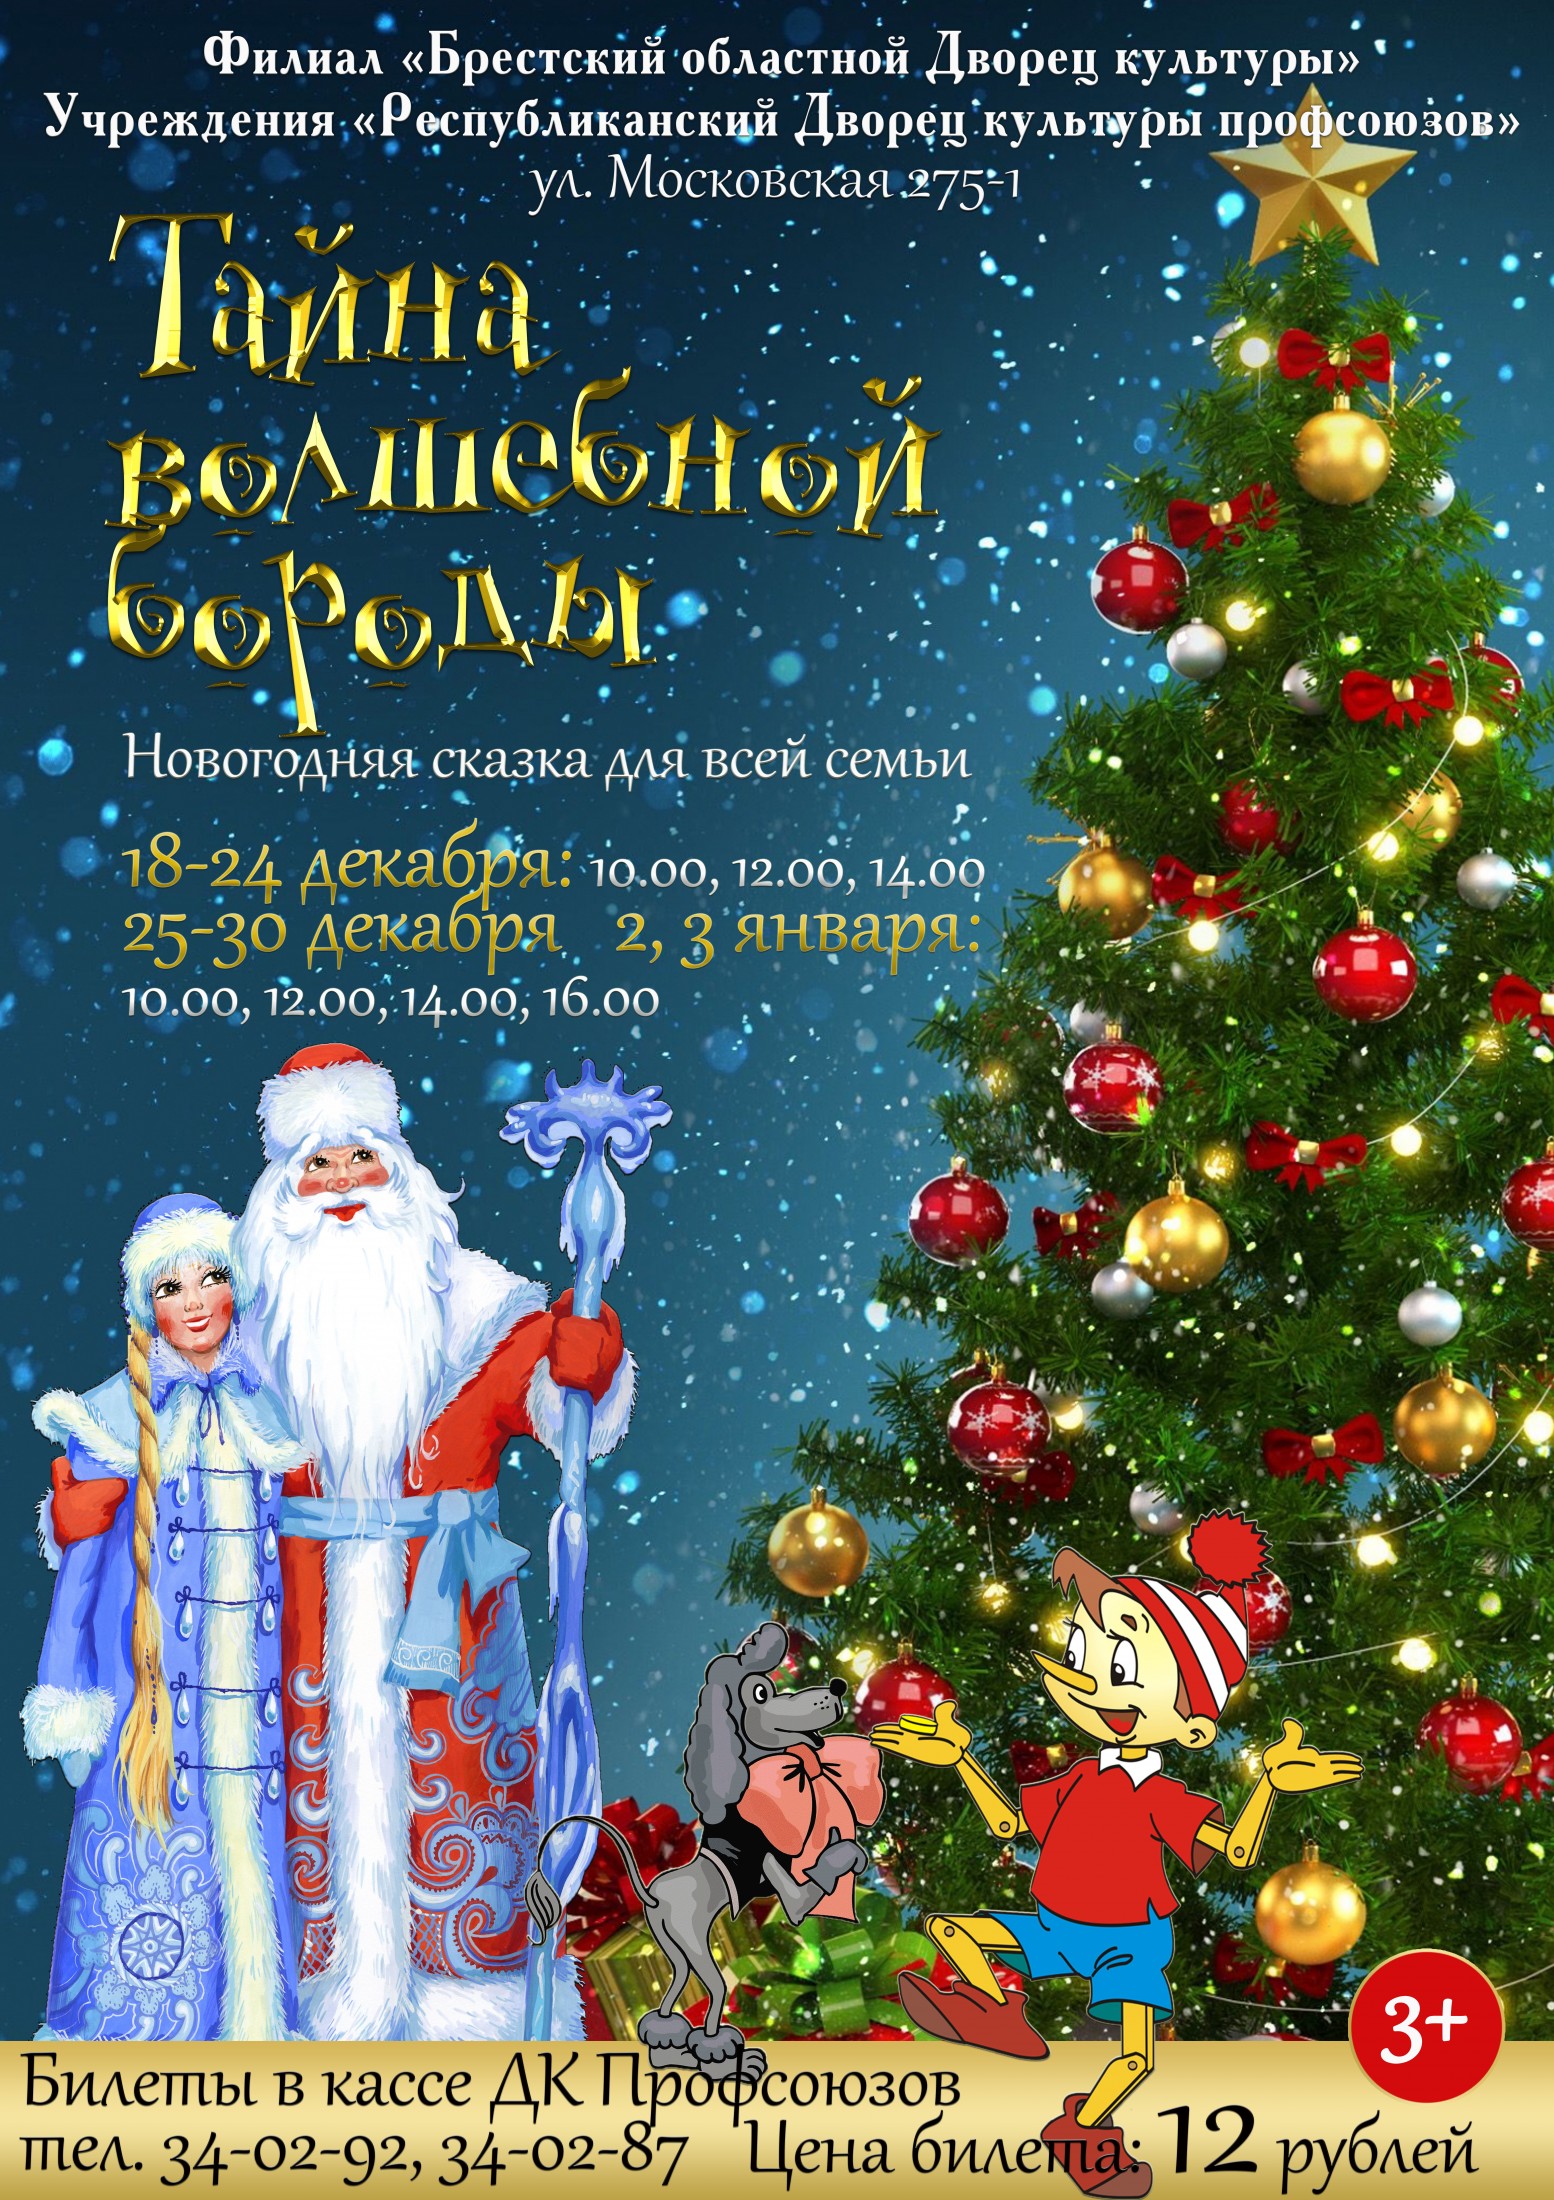 Брестский областной Дворец культуры профсоюзов приглашает: Новогодняя сказка для всей семьи 